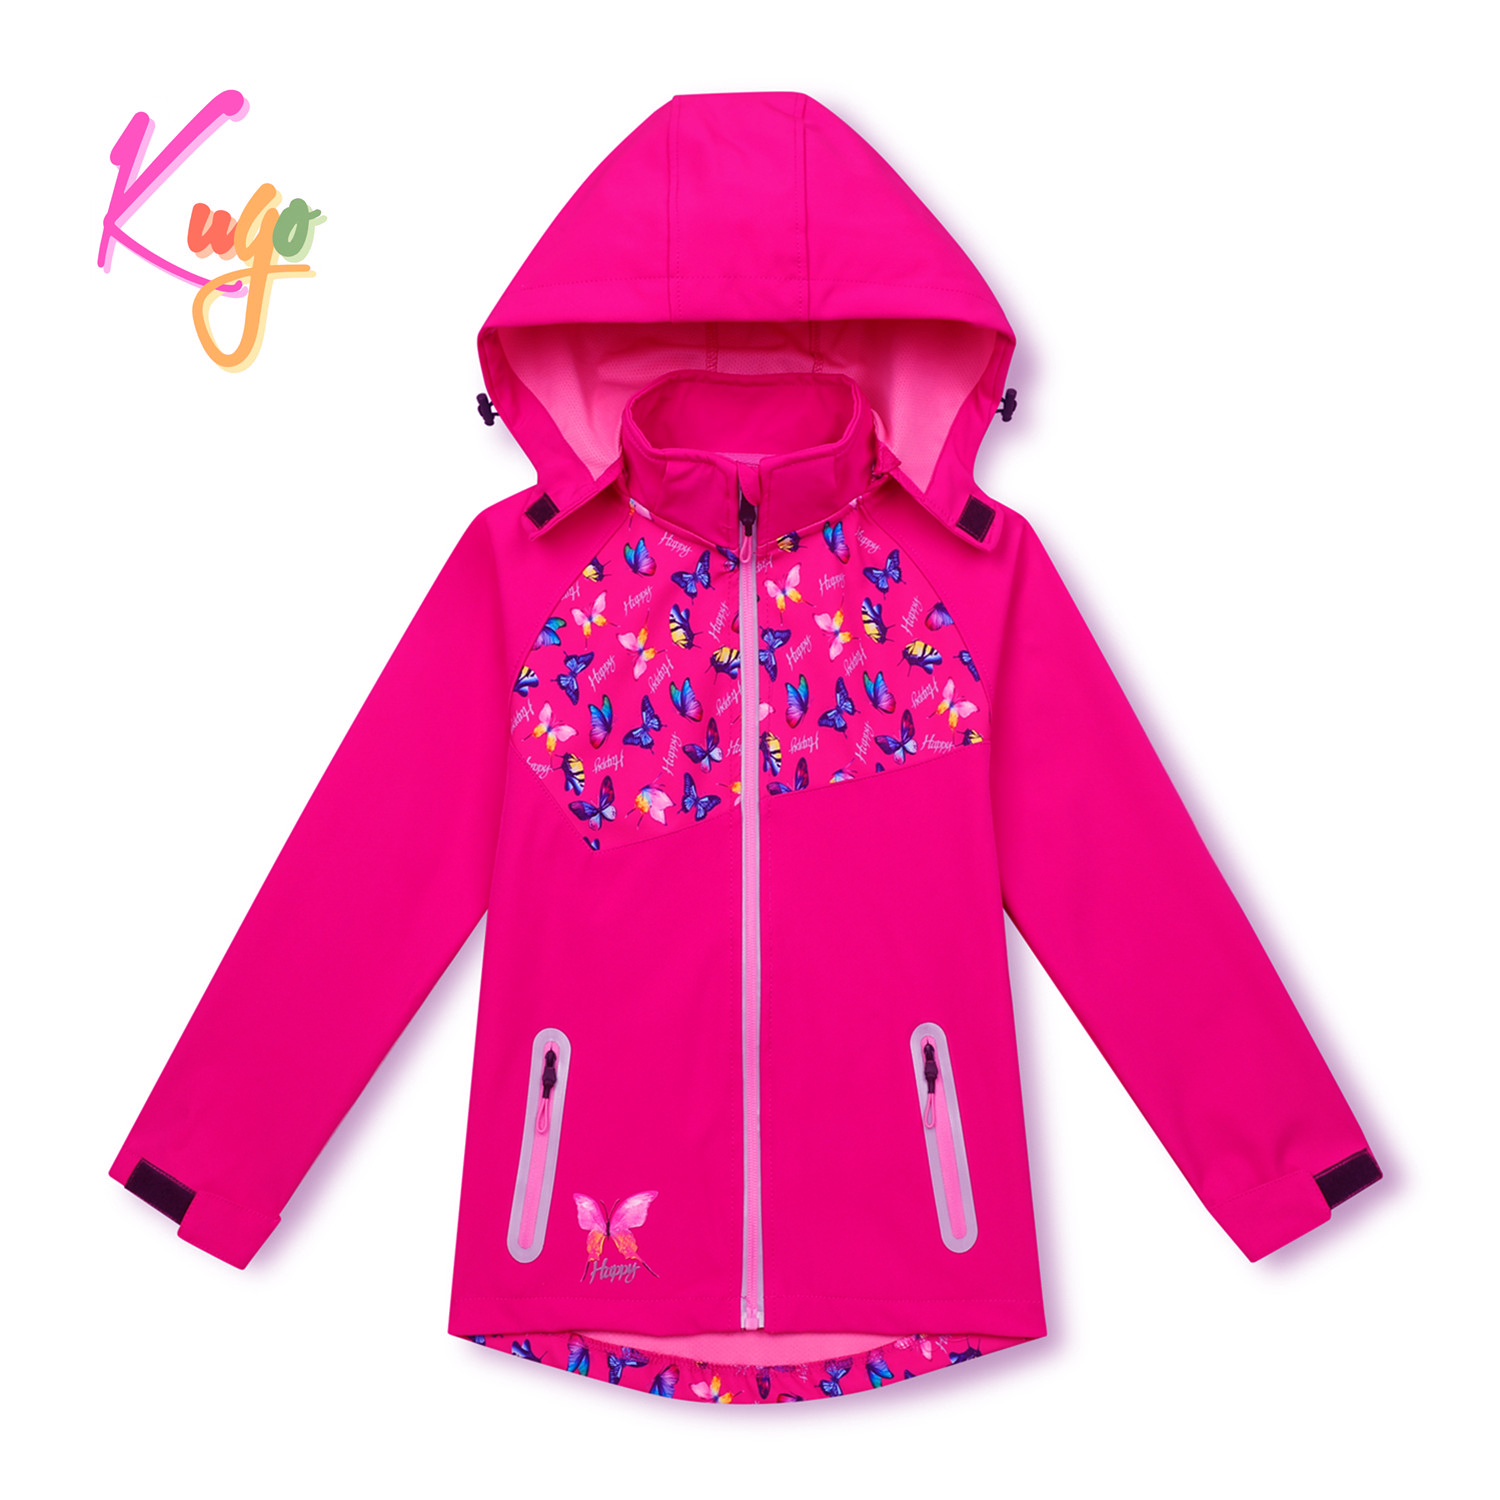 Dívčí softshellová bunda - KUGO HK3123, růžová Barva: Růžová, Velikost: 116